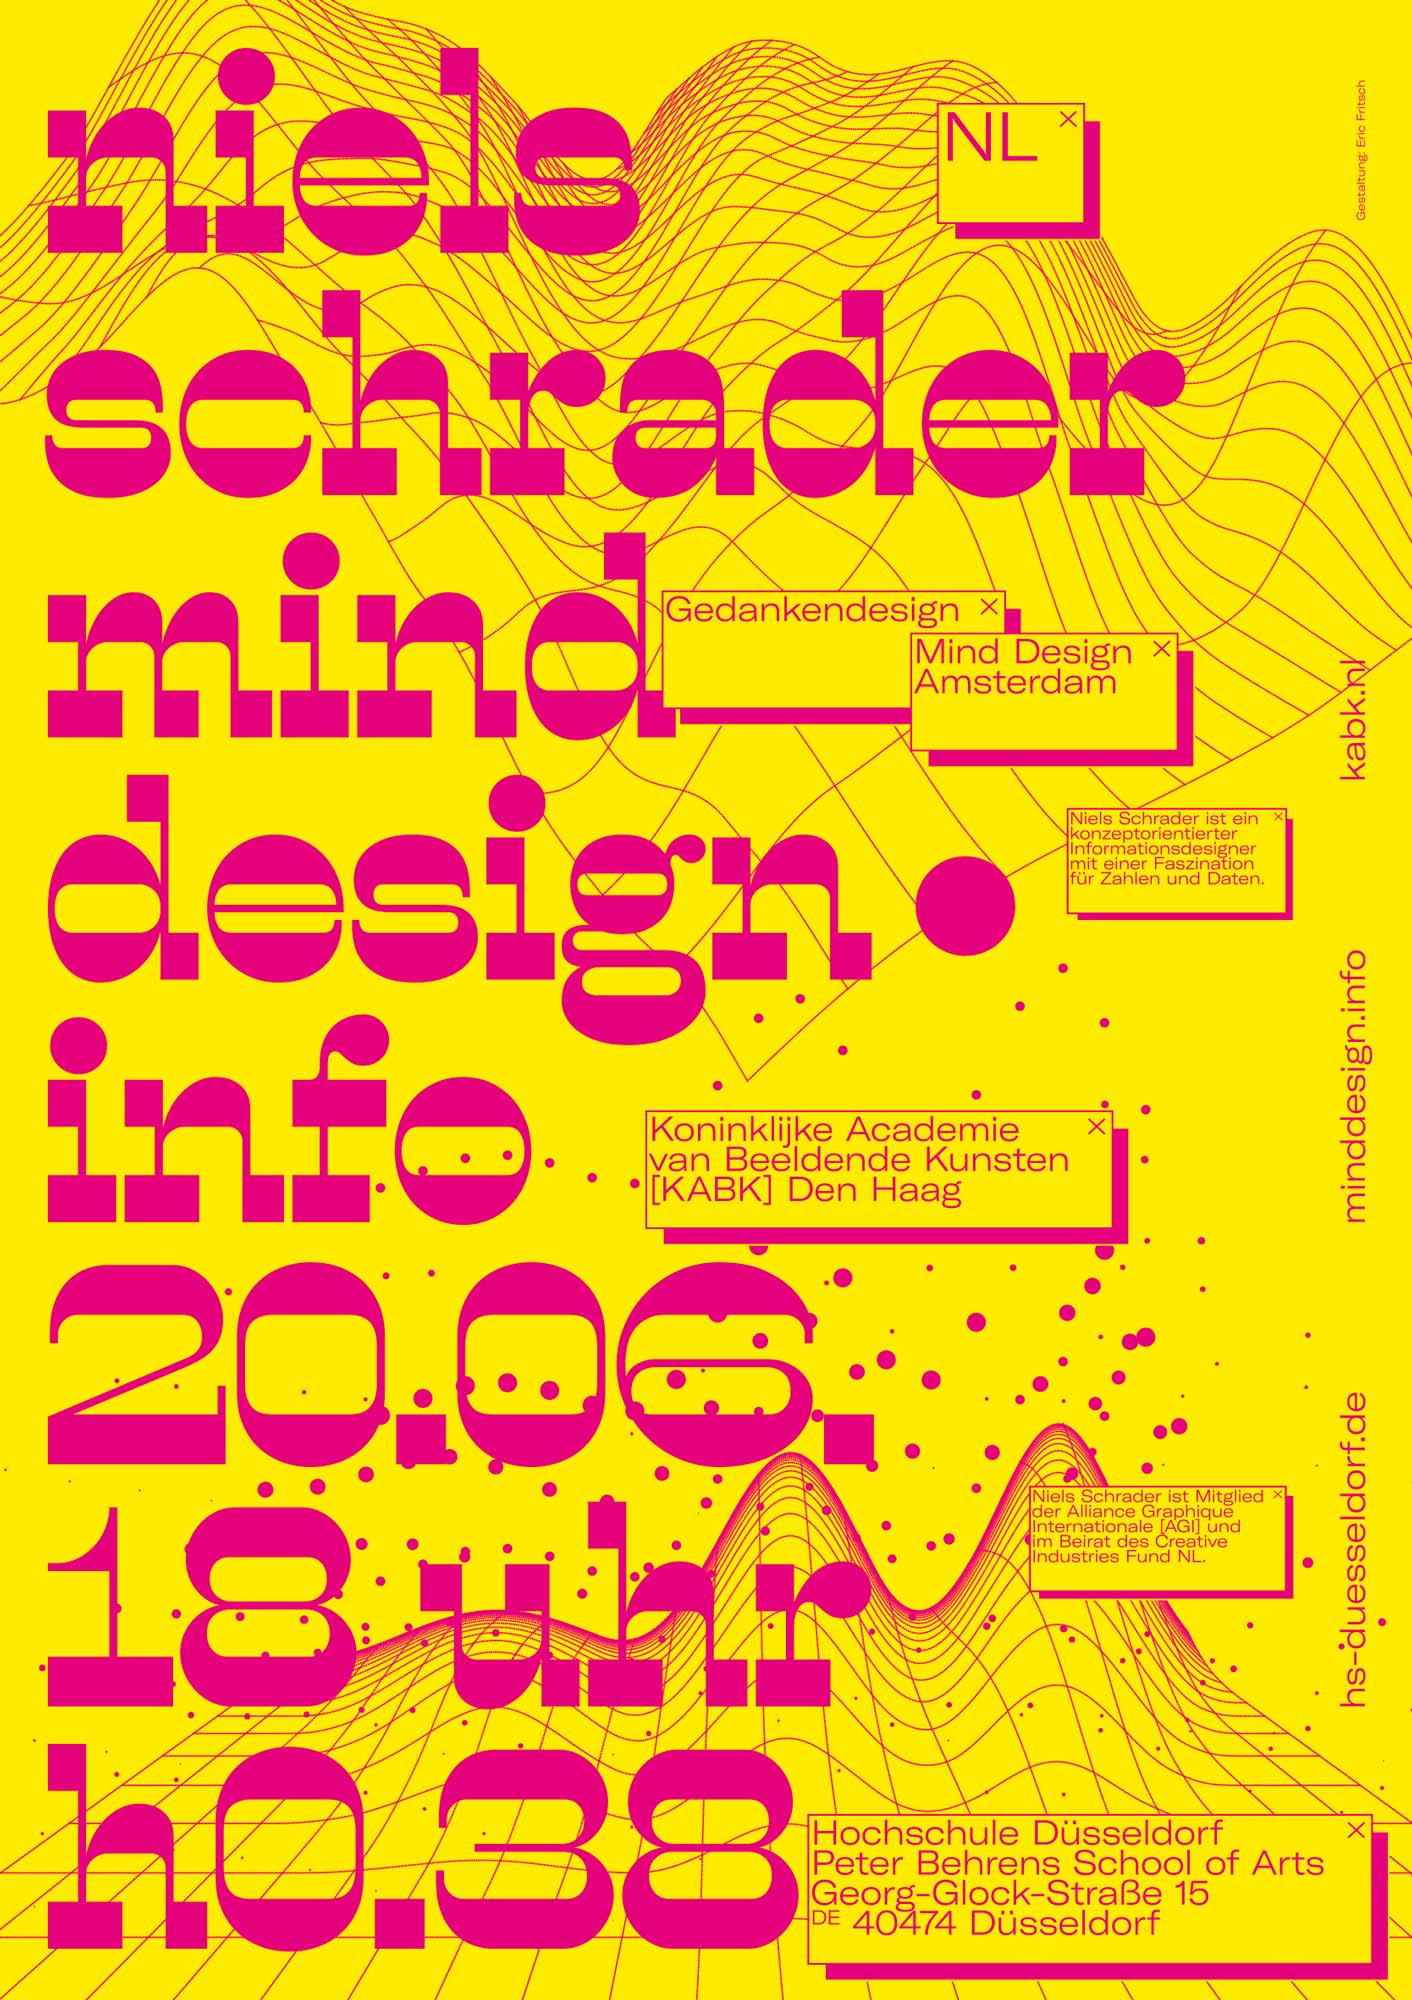 Gestaltet: Eric Fritsch, Titel: Nils Schrader Mind Design, Jahr: 2018